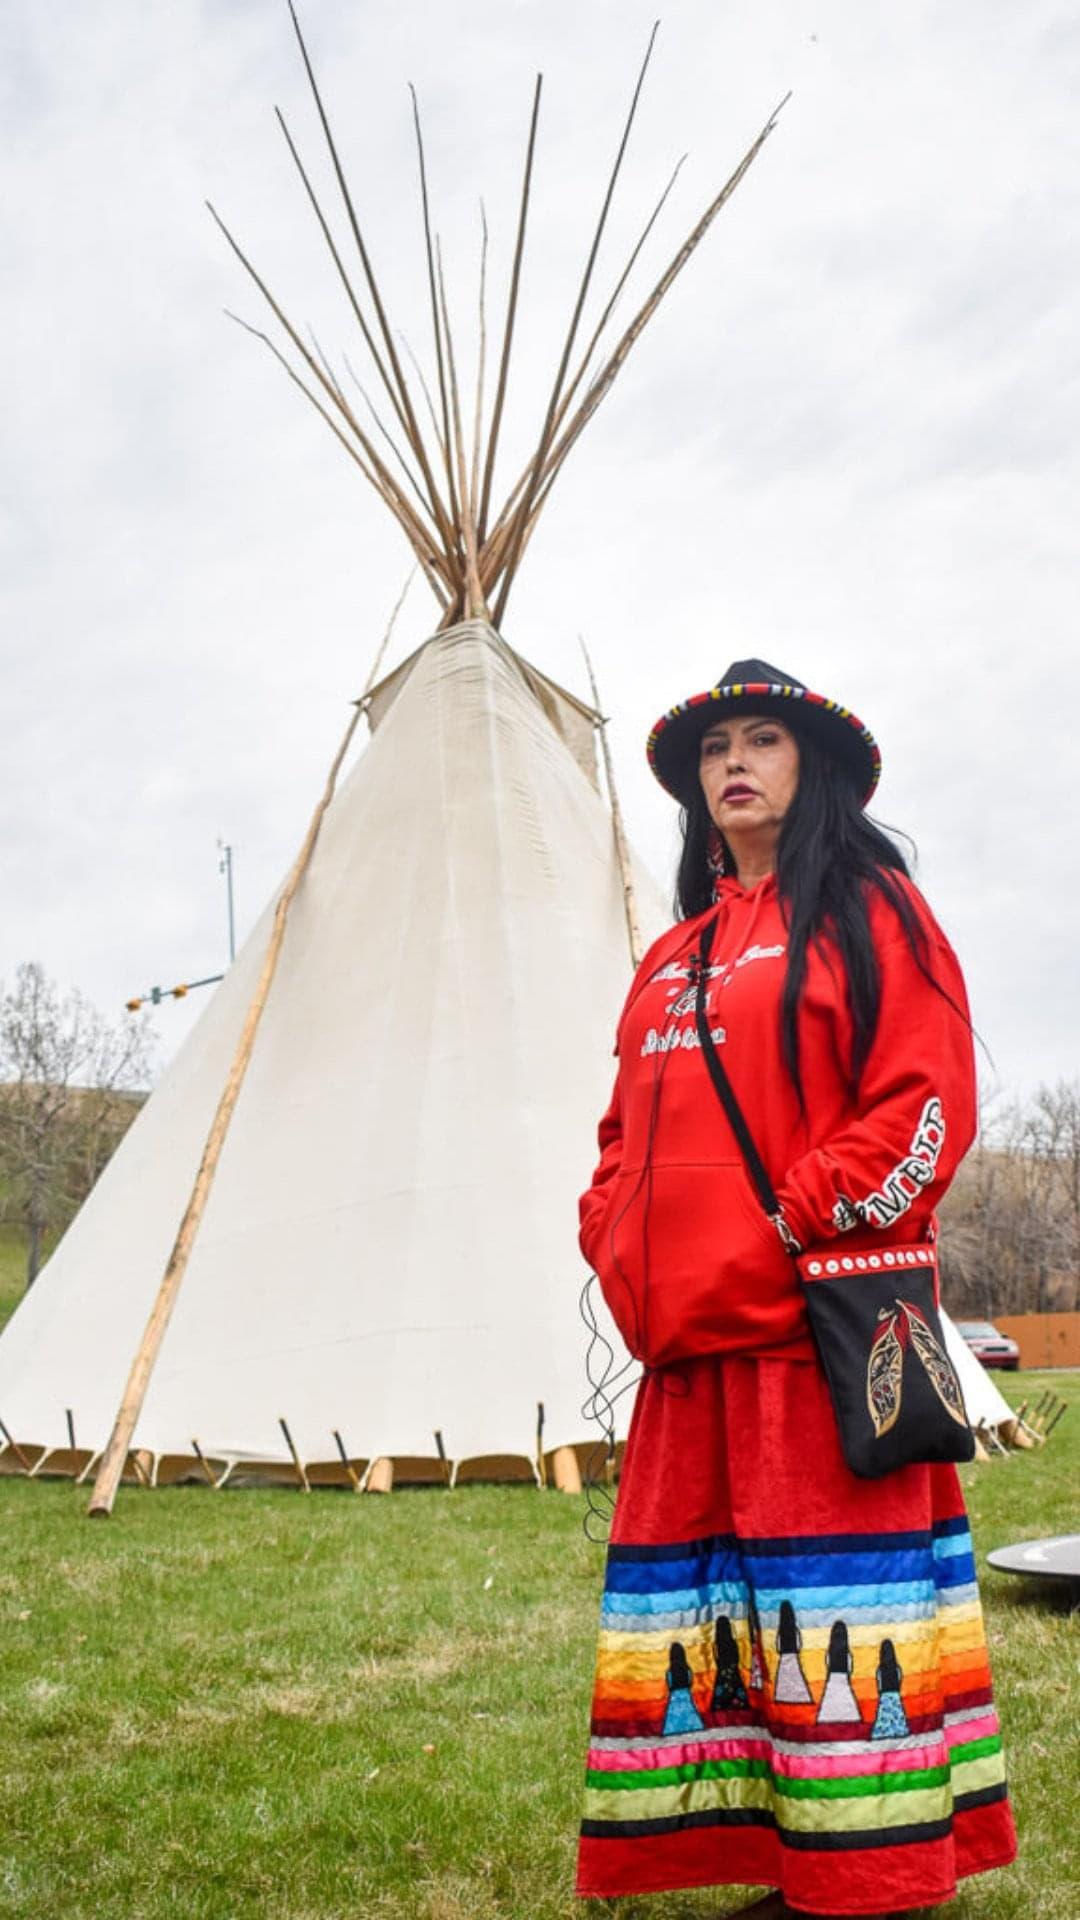 Deborah in traditional costume, a teepee behind her.